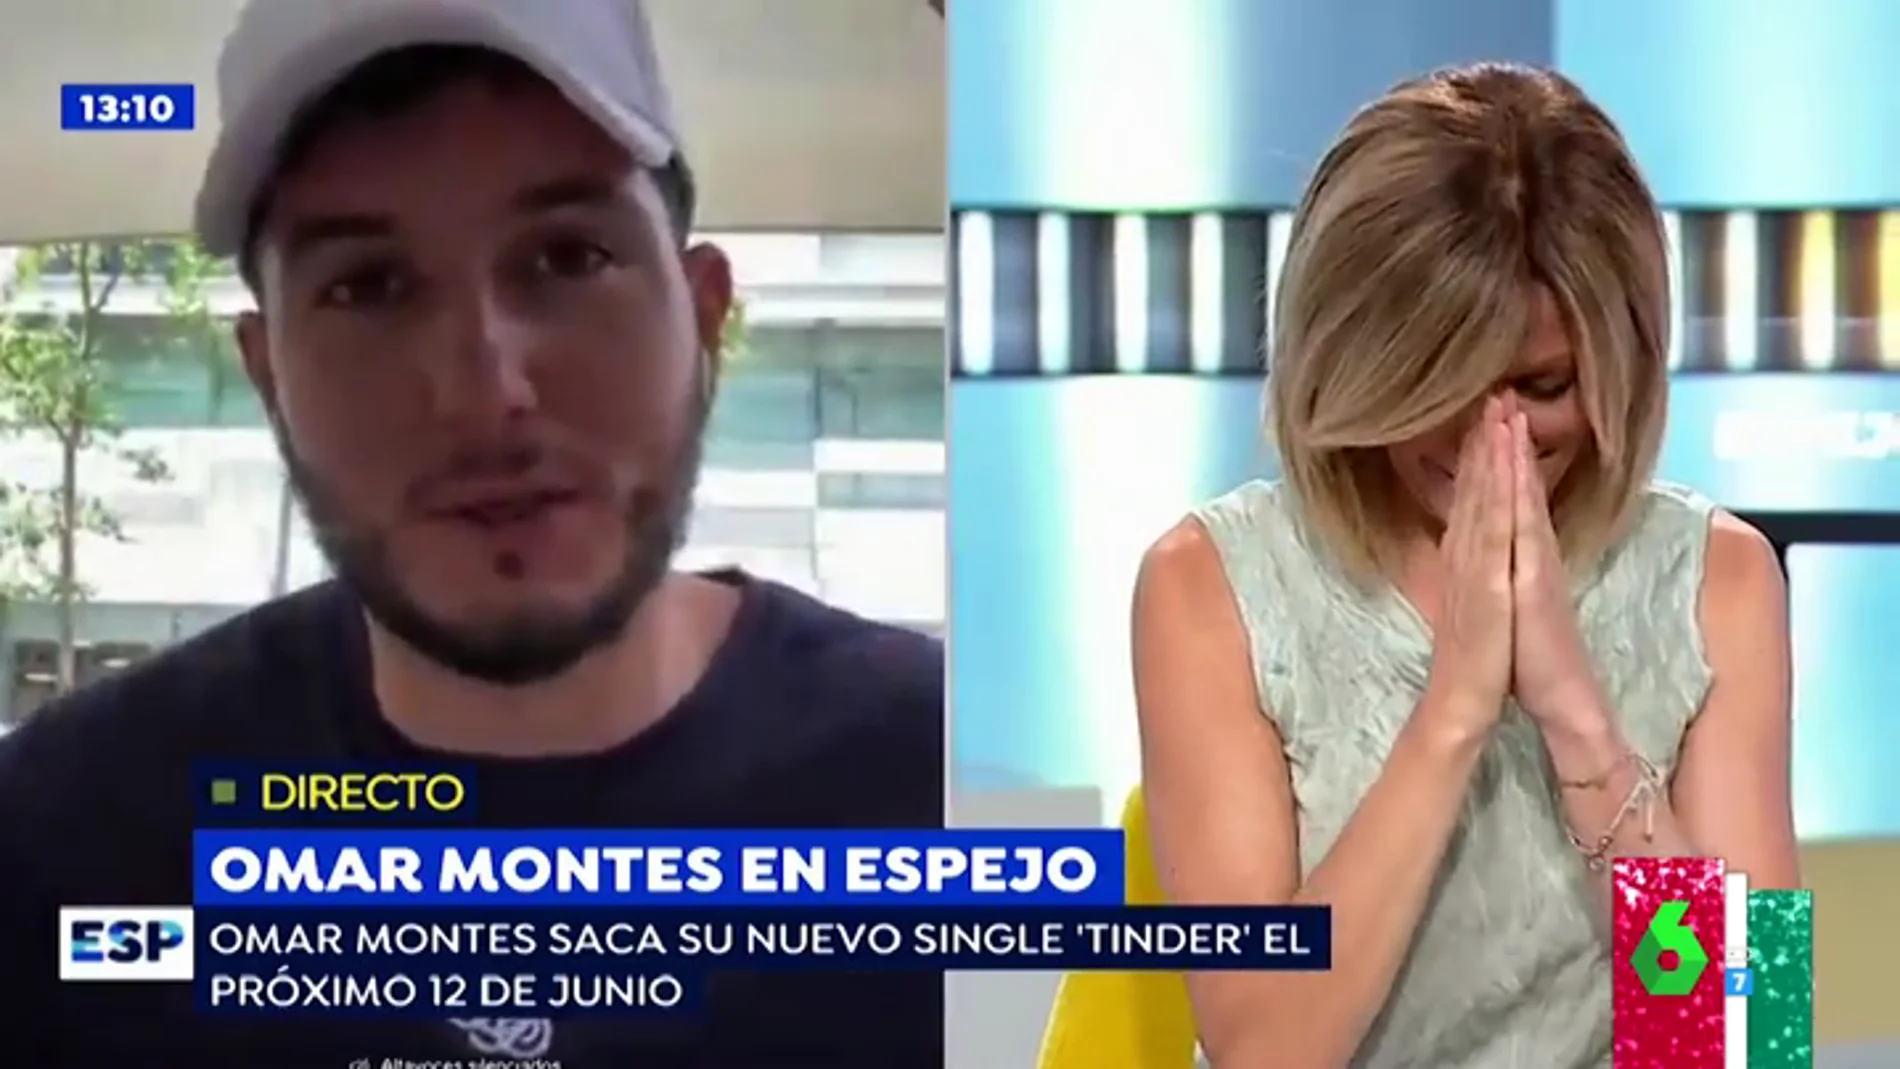 Las muestras de amor de Omar Montes a Susana Grisso que sonrojan a la periodista en directo